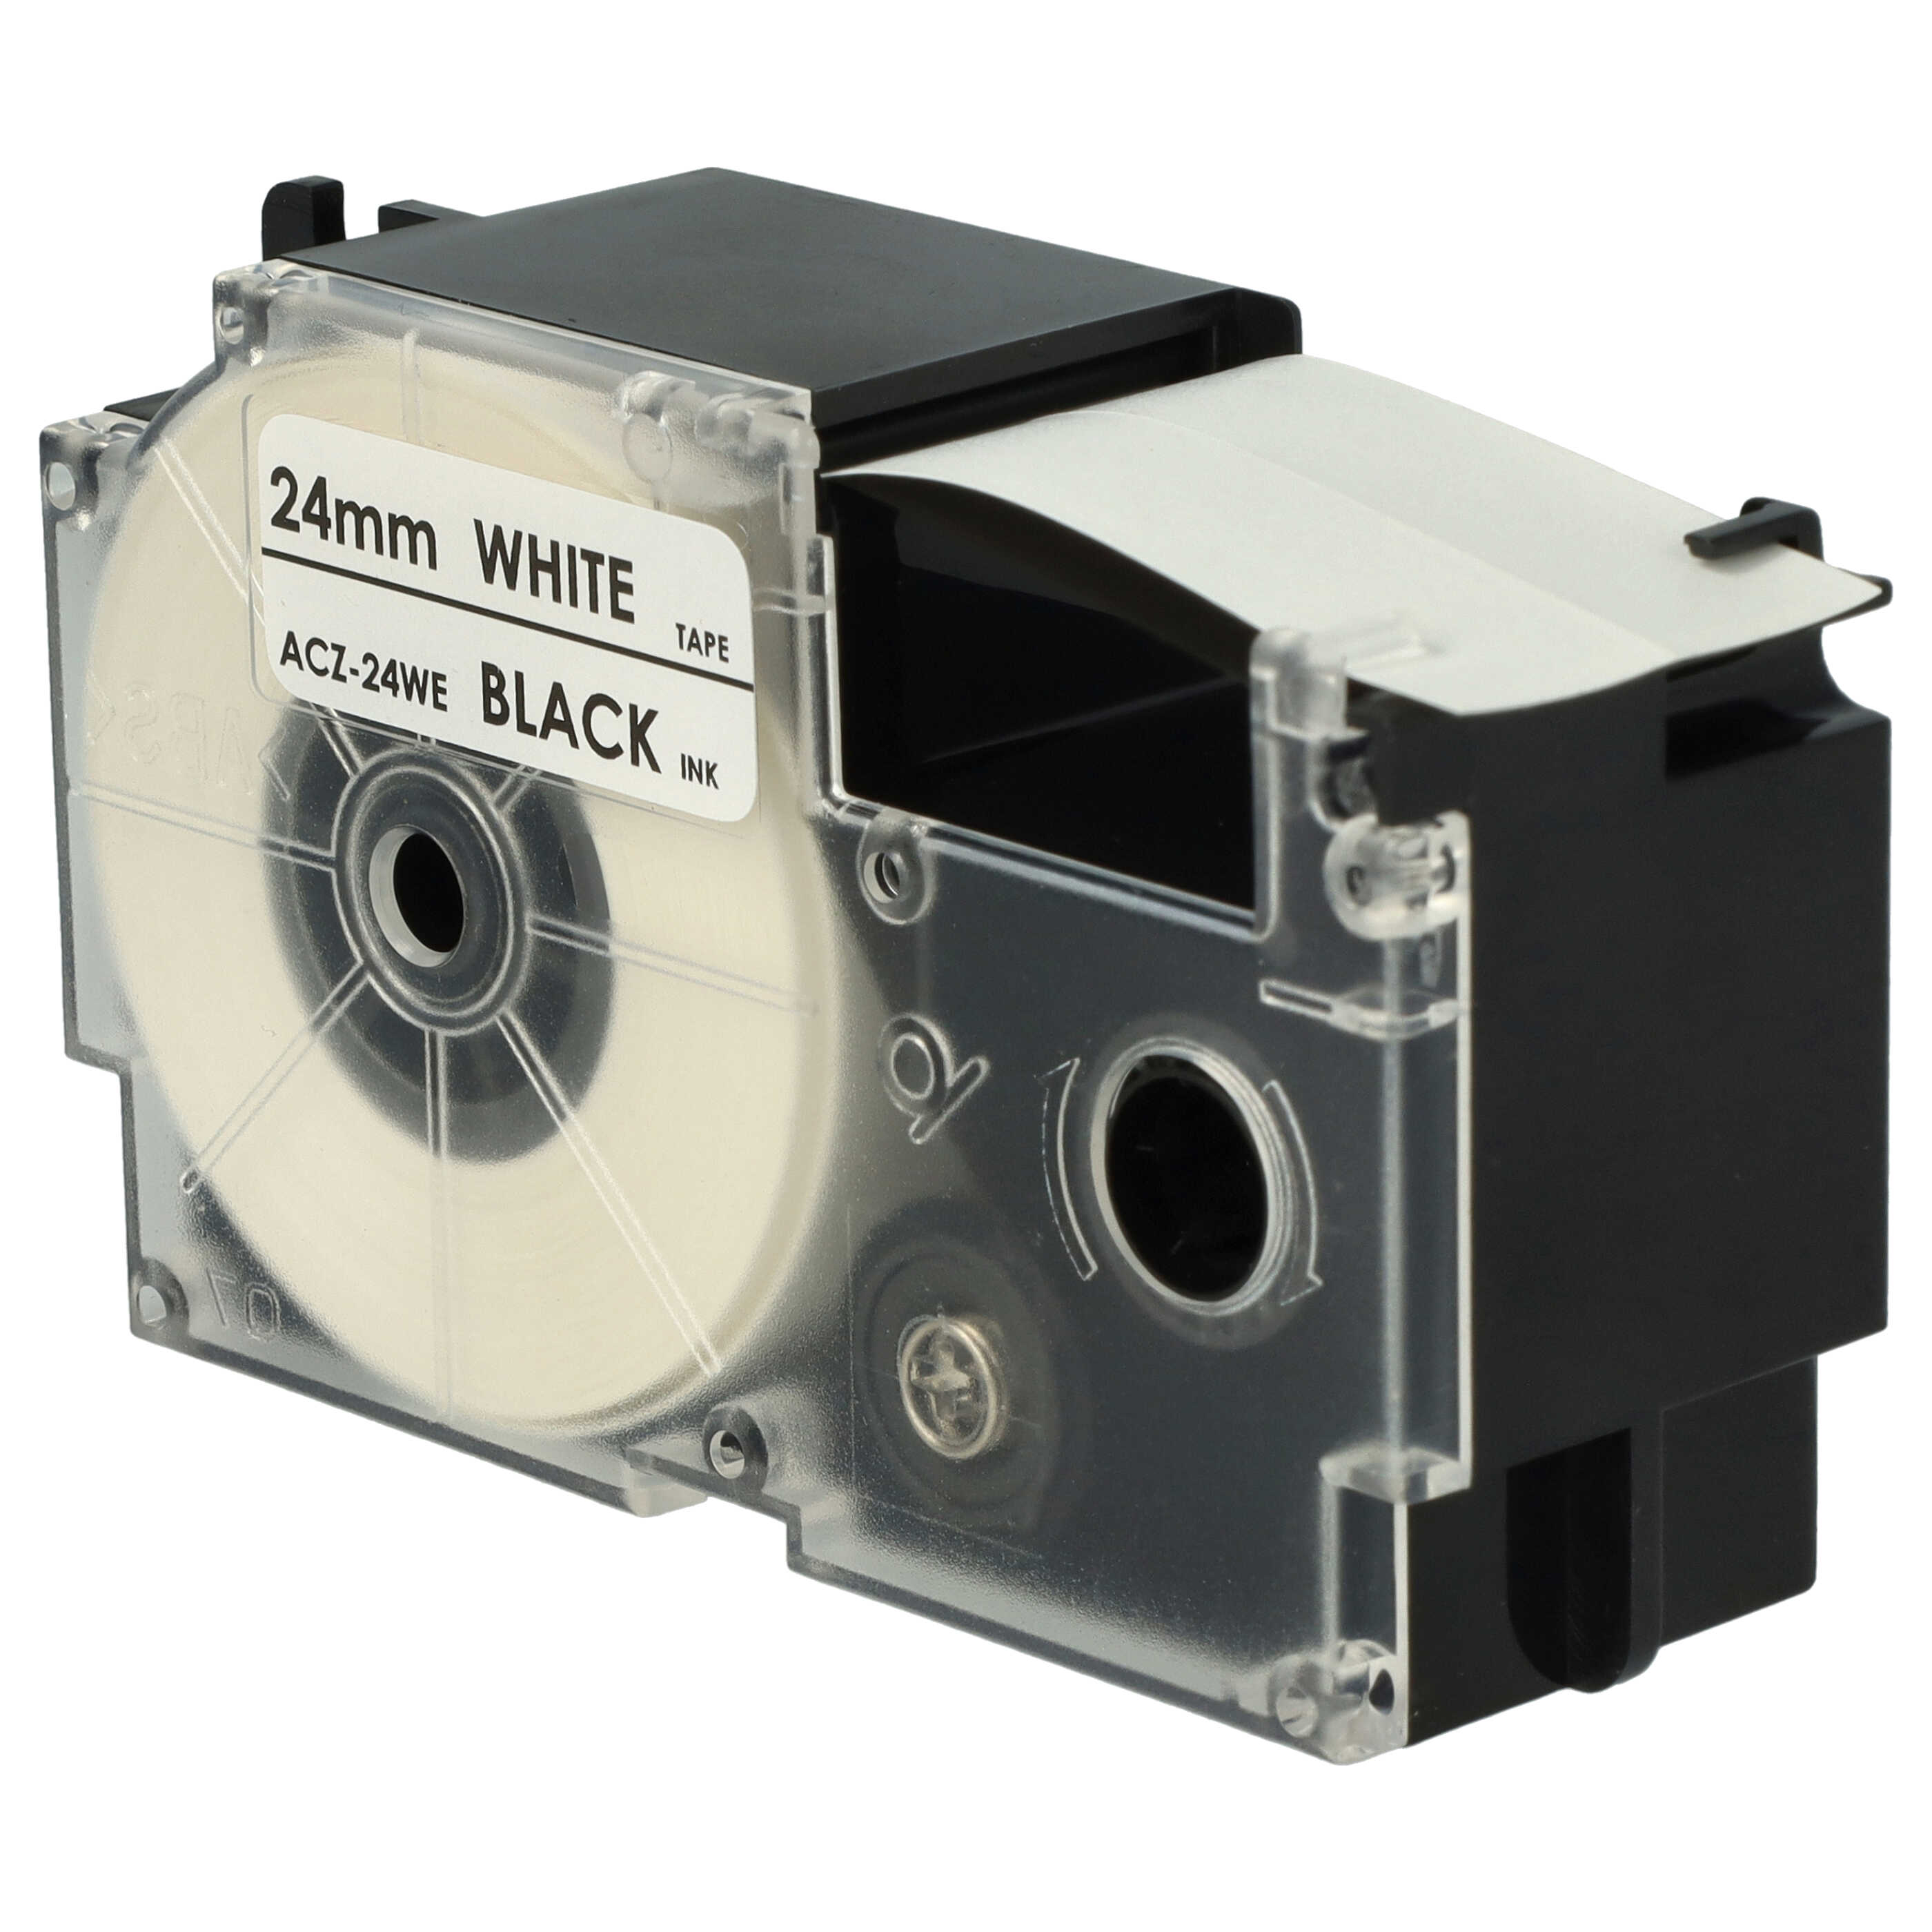 Casete cinta escritura reemplaza Casio XR-24WE1, XR-24WE Negro su Blanco